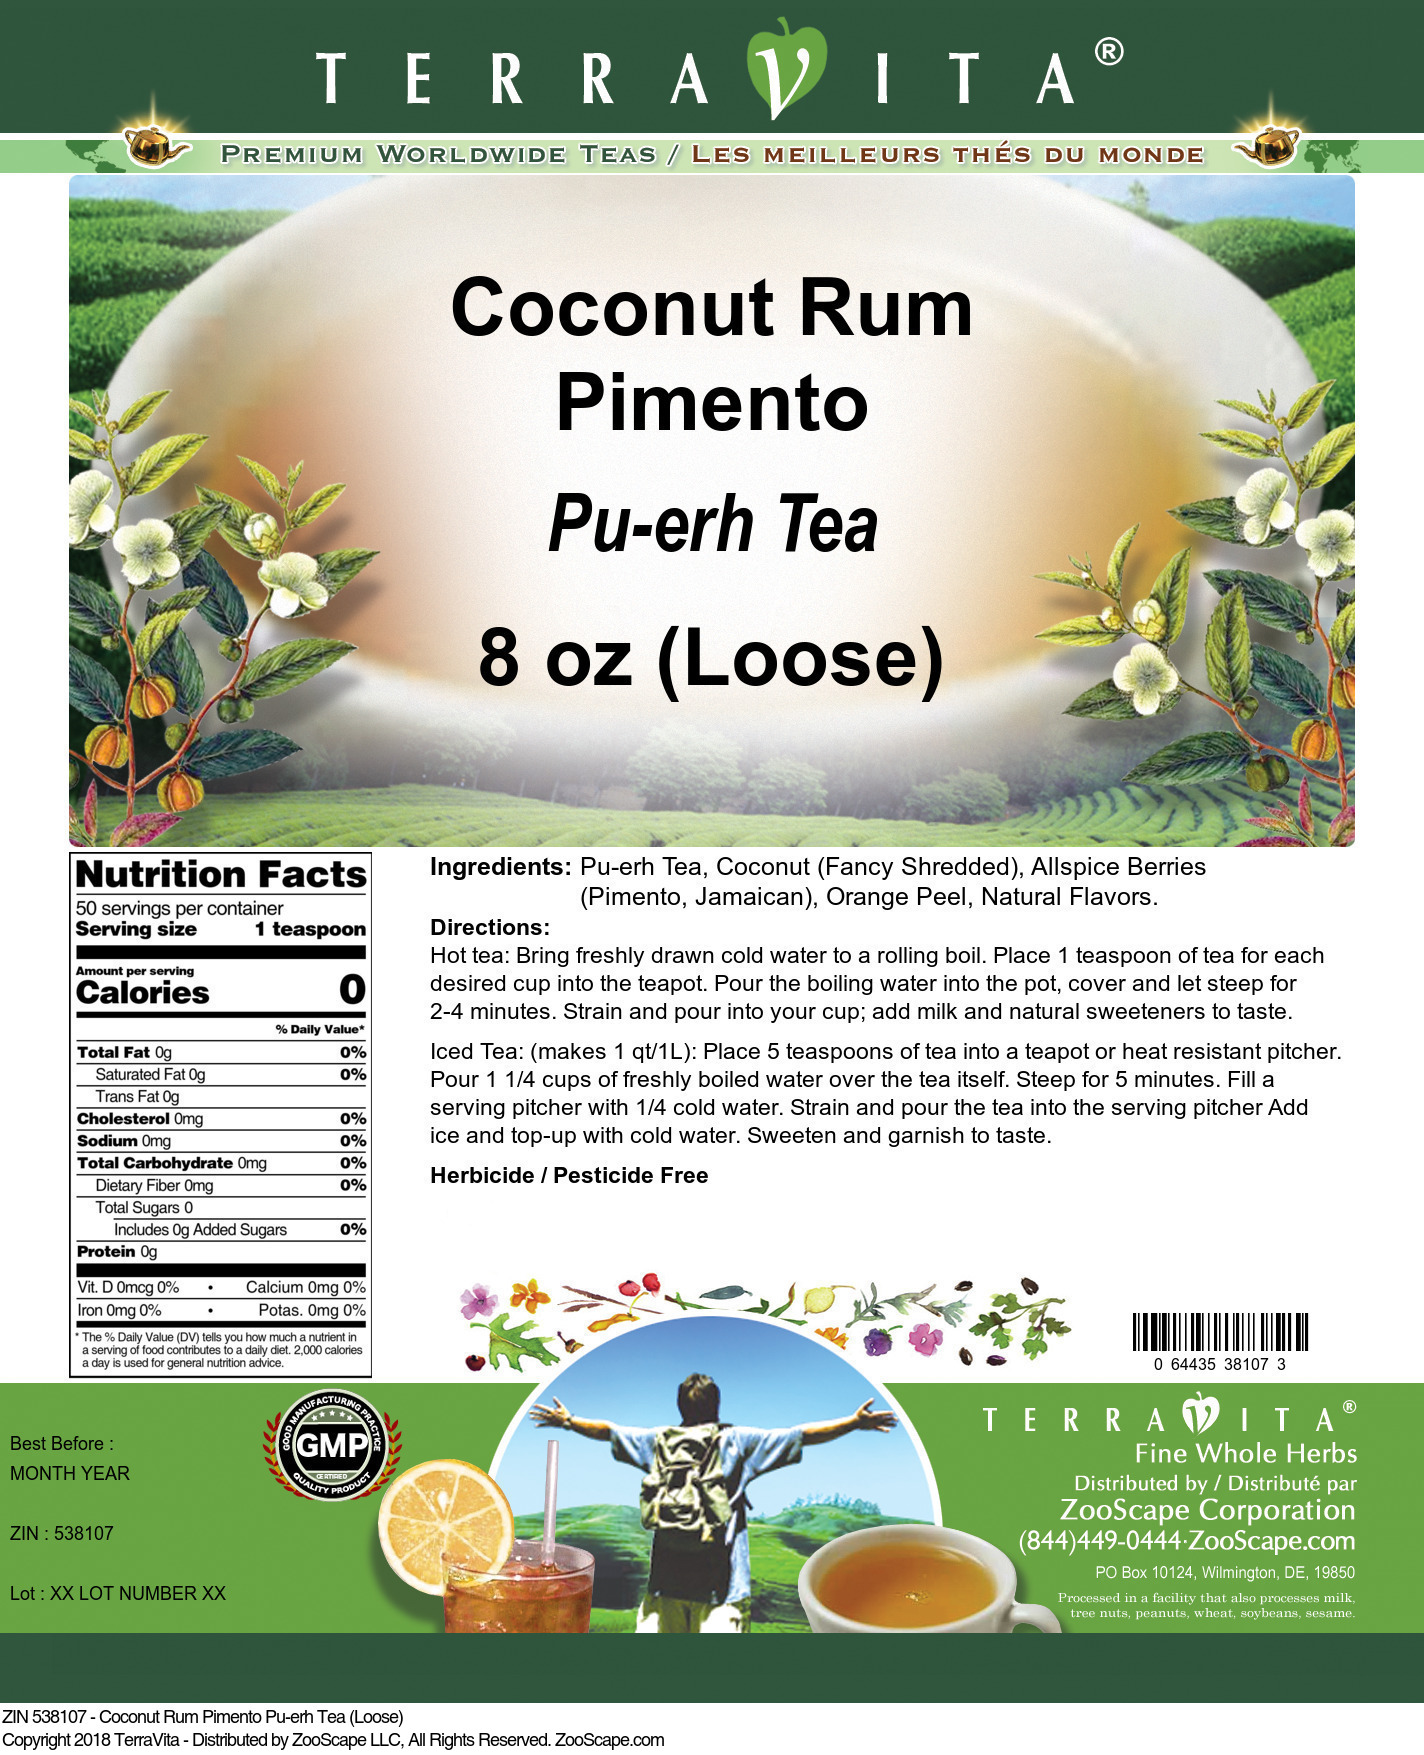 Coconut Rum Pimento Pu-erh Tea (Loose) - Label